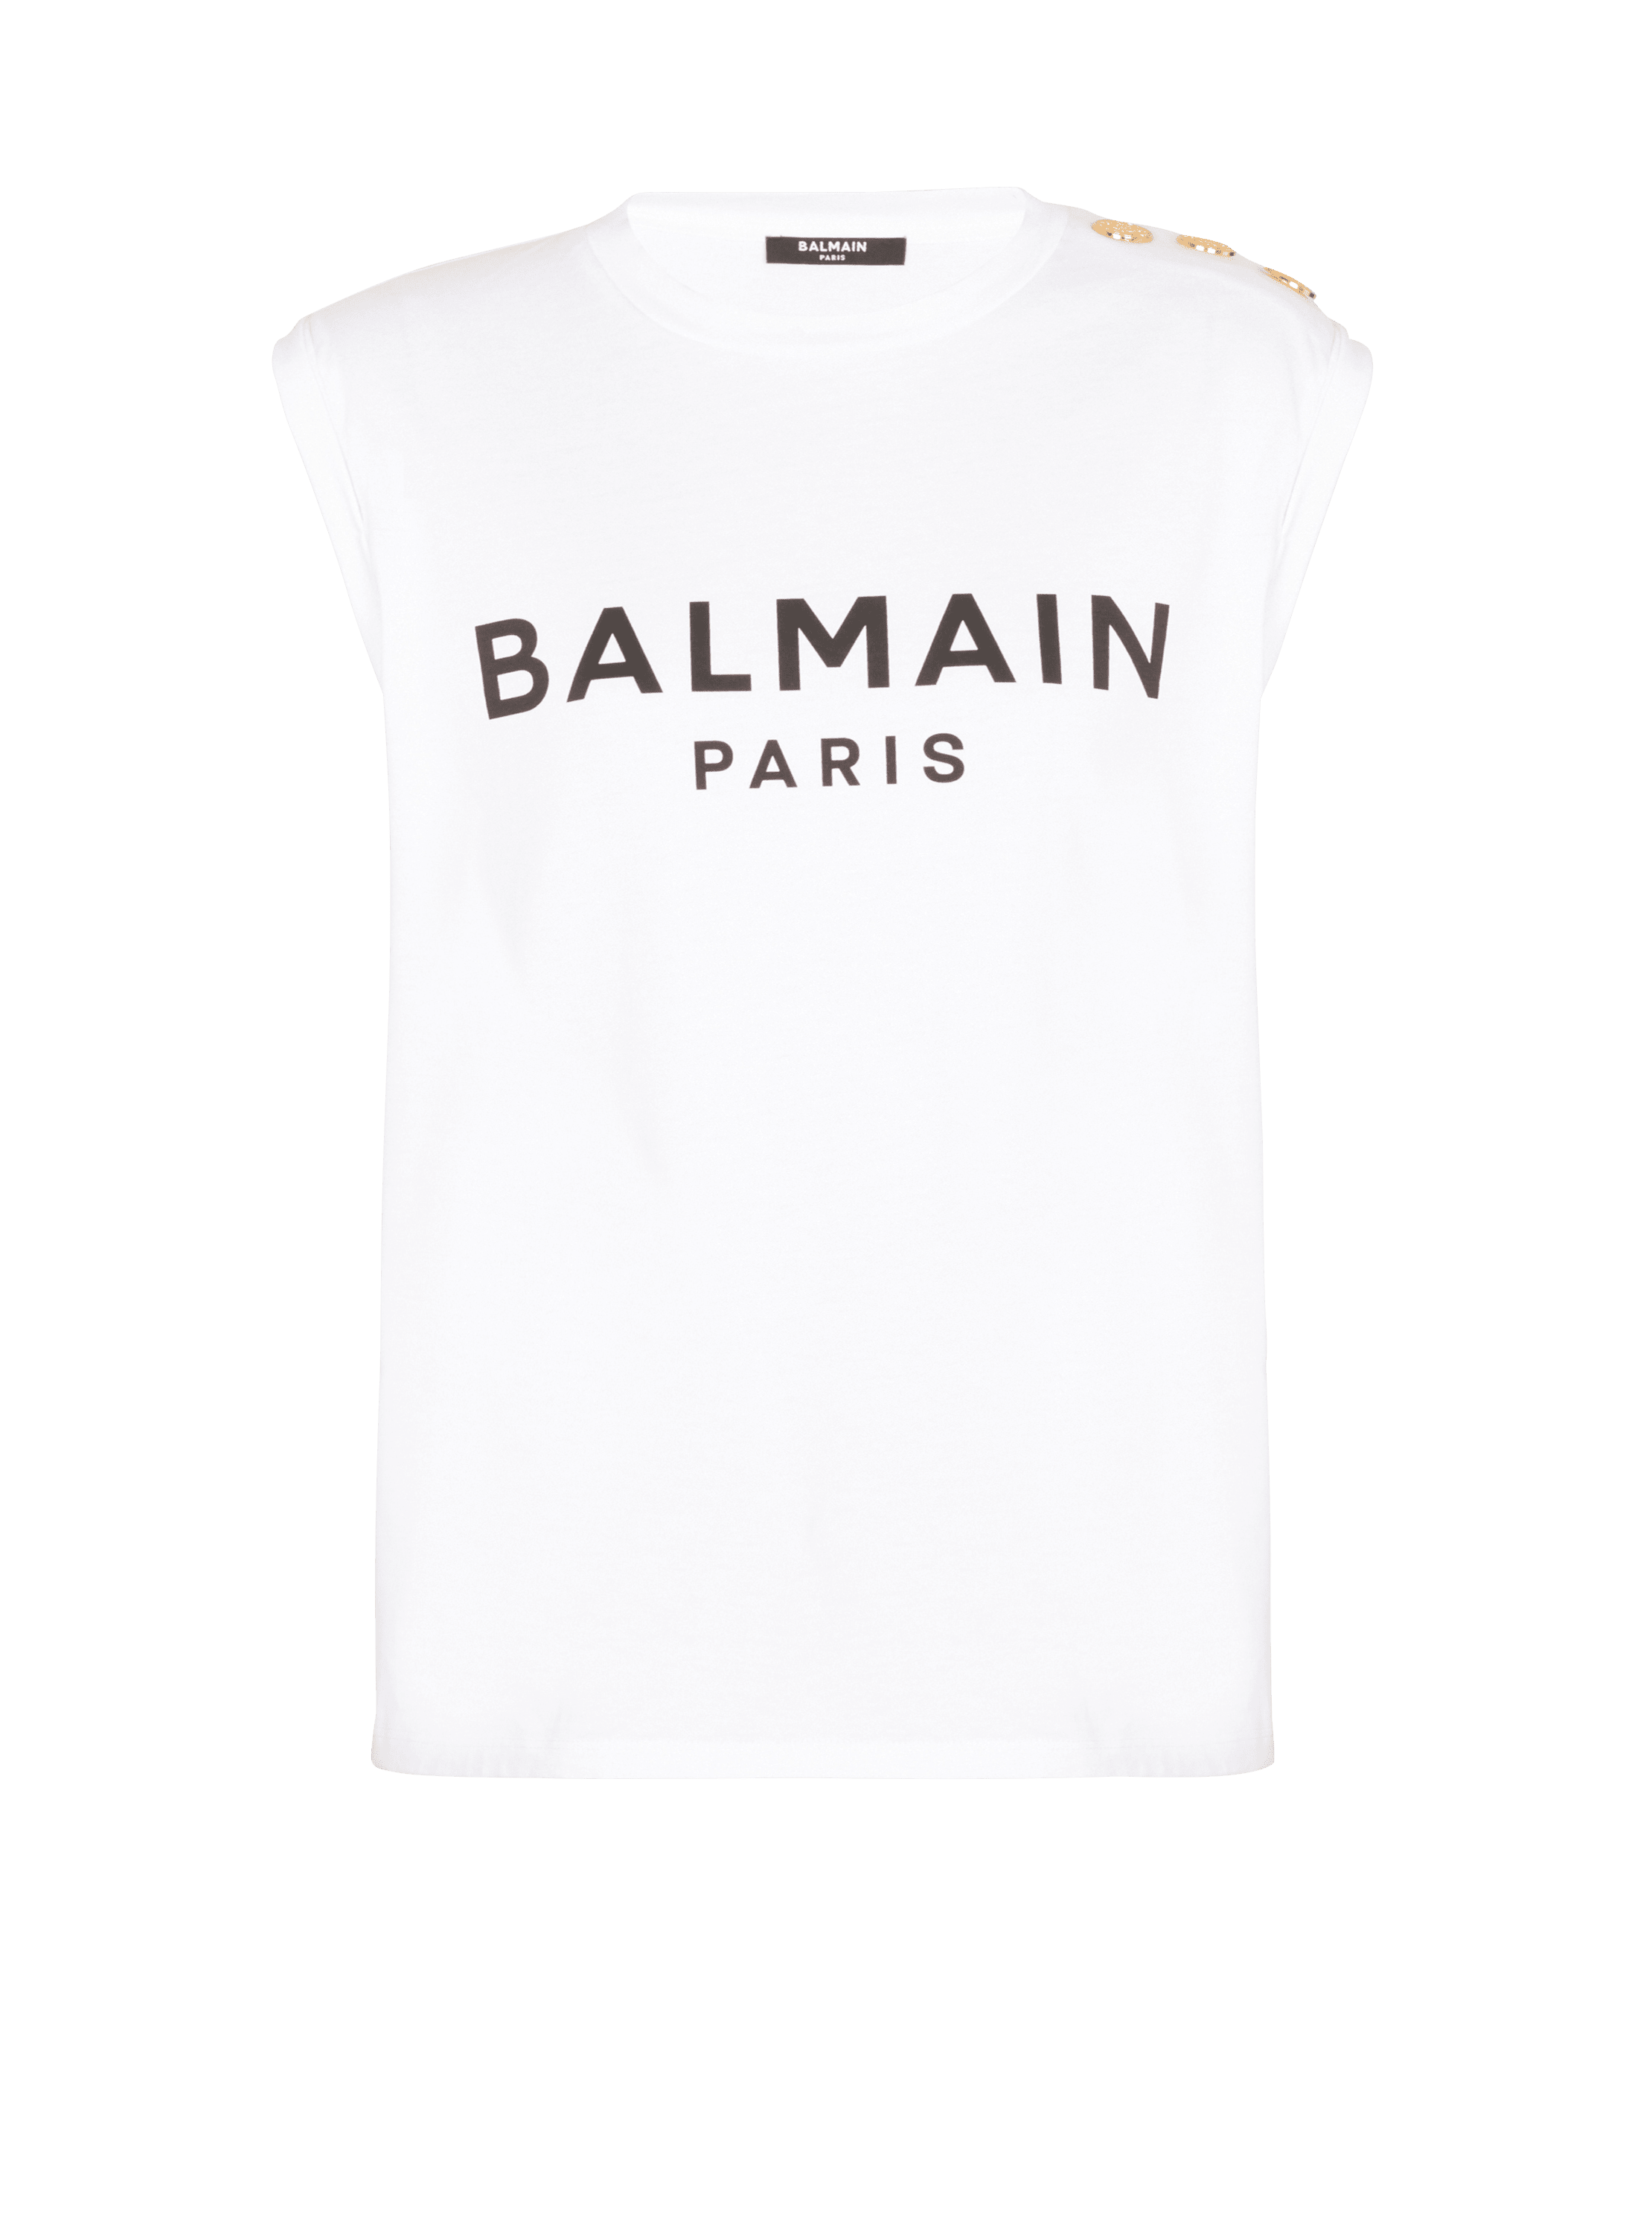 Balmain Paris tank top